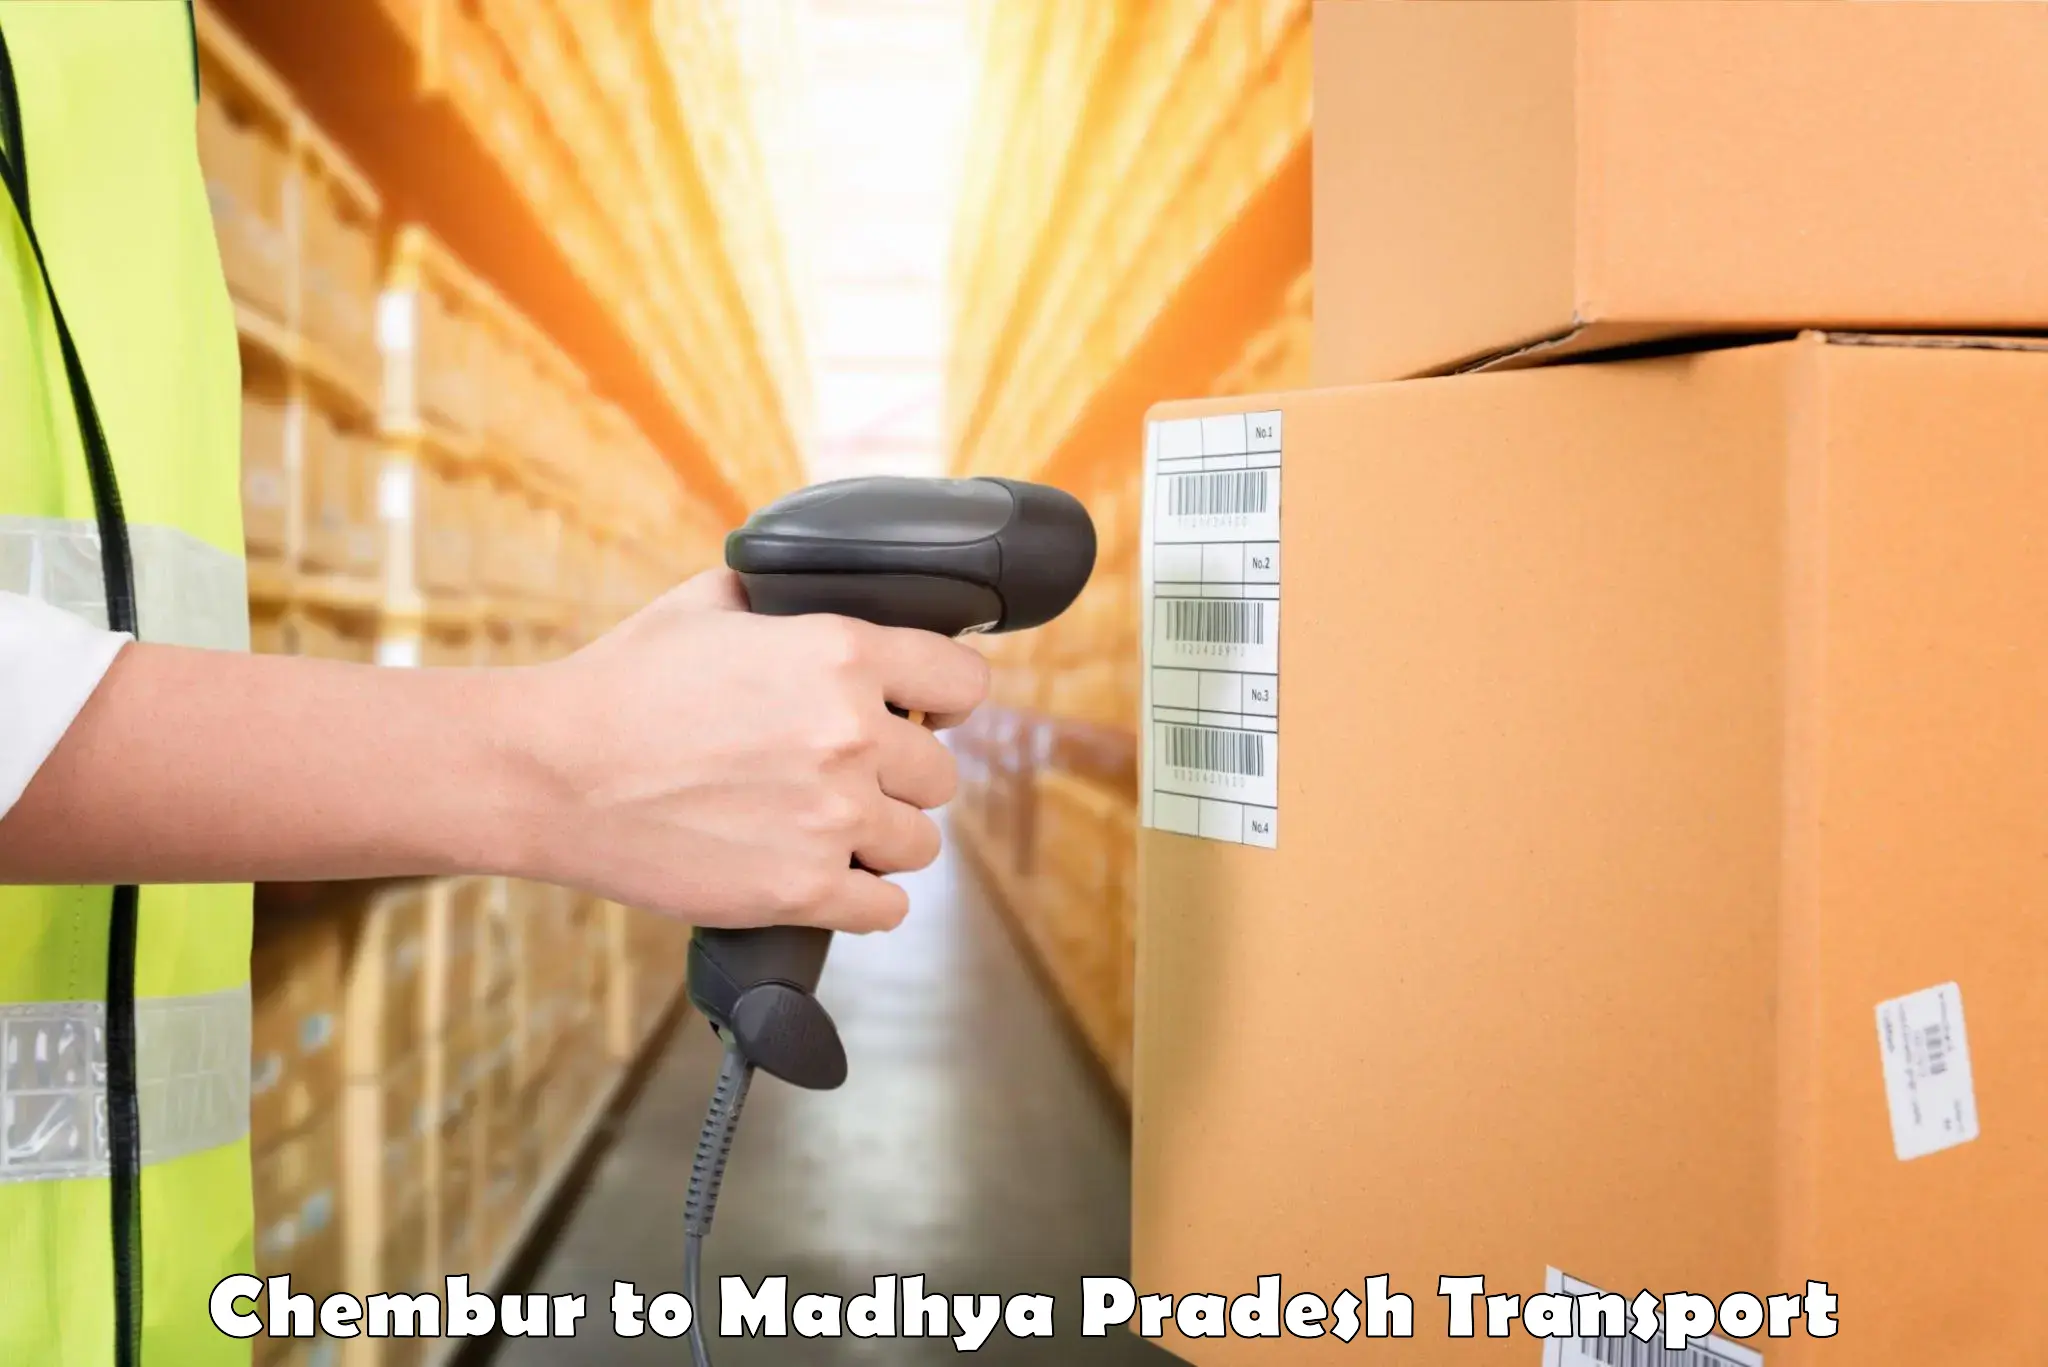 Truck transport companies in India Chembur to Pipariya